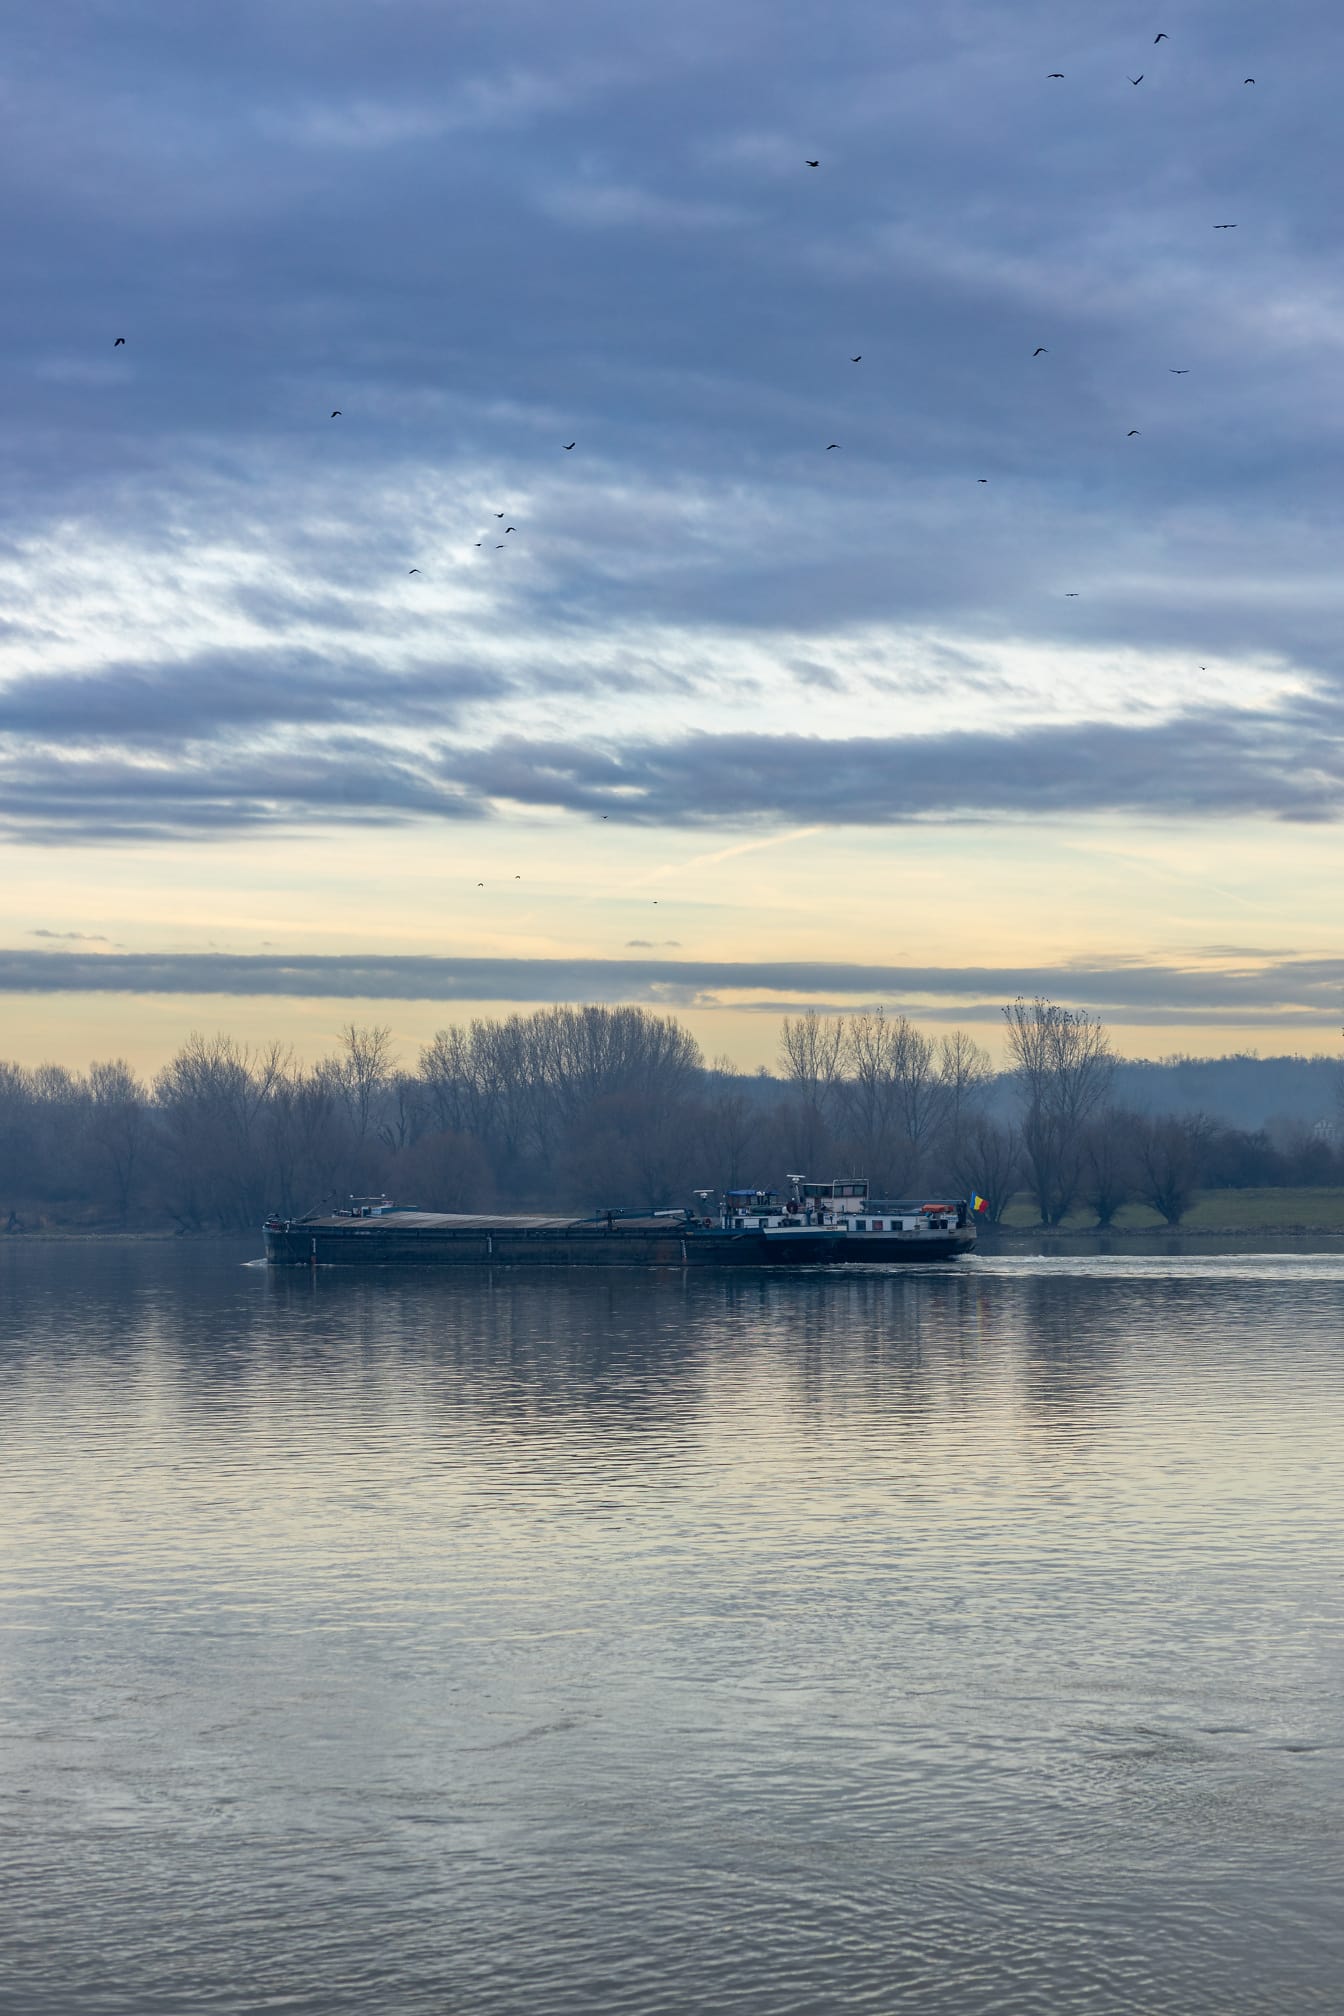 多瑙河上悬挂罗马尼亚国旗的货船